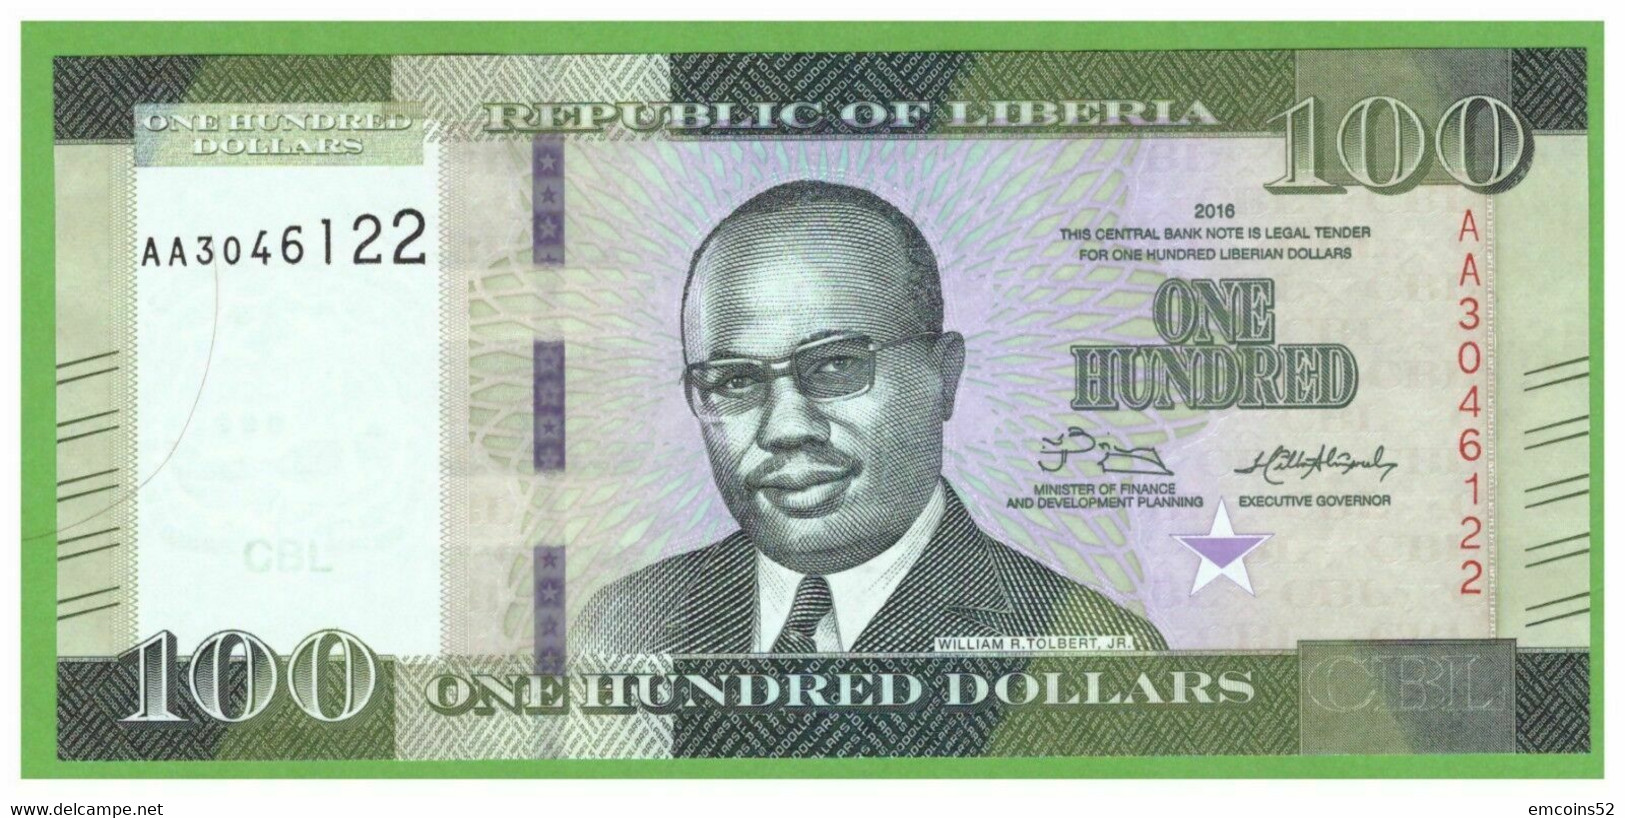 LIBERIA 100 DOLLARS 2016  P-35a  UNC - Liberia